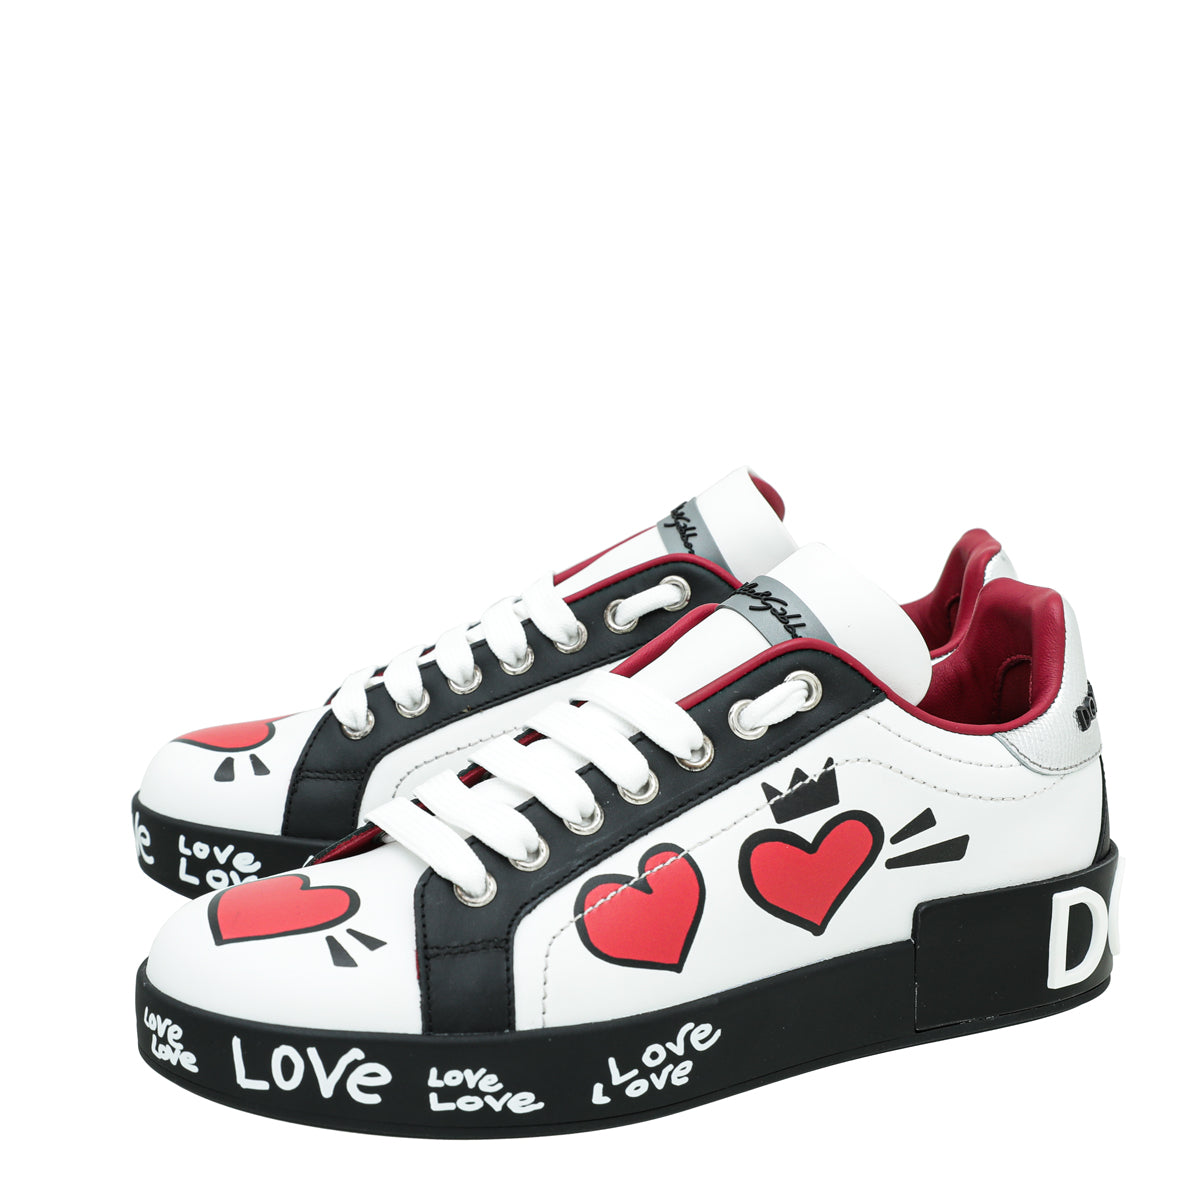 Dolce & Gabbana Multicolor Portofino Heart Print Low Top Sneakers 36.5